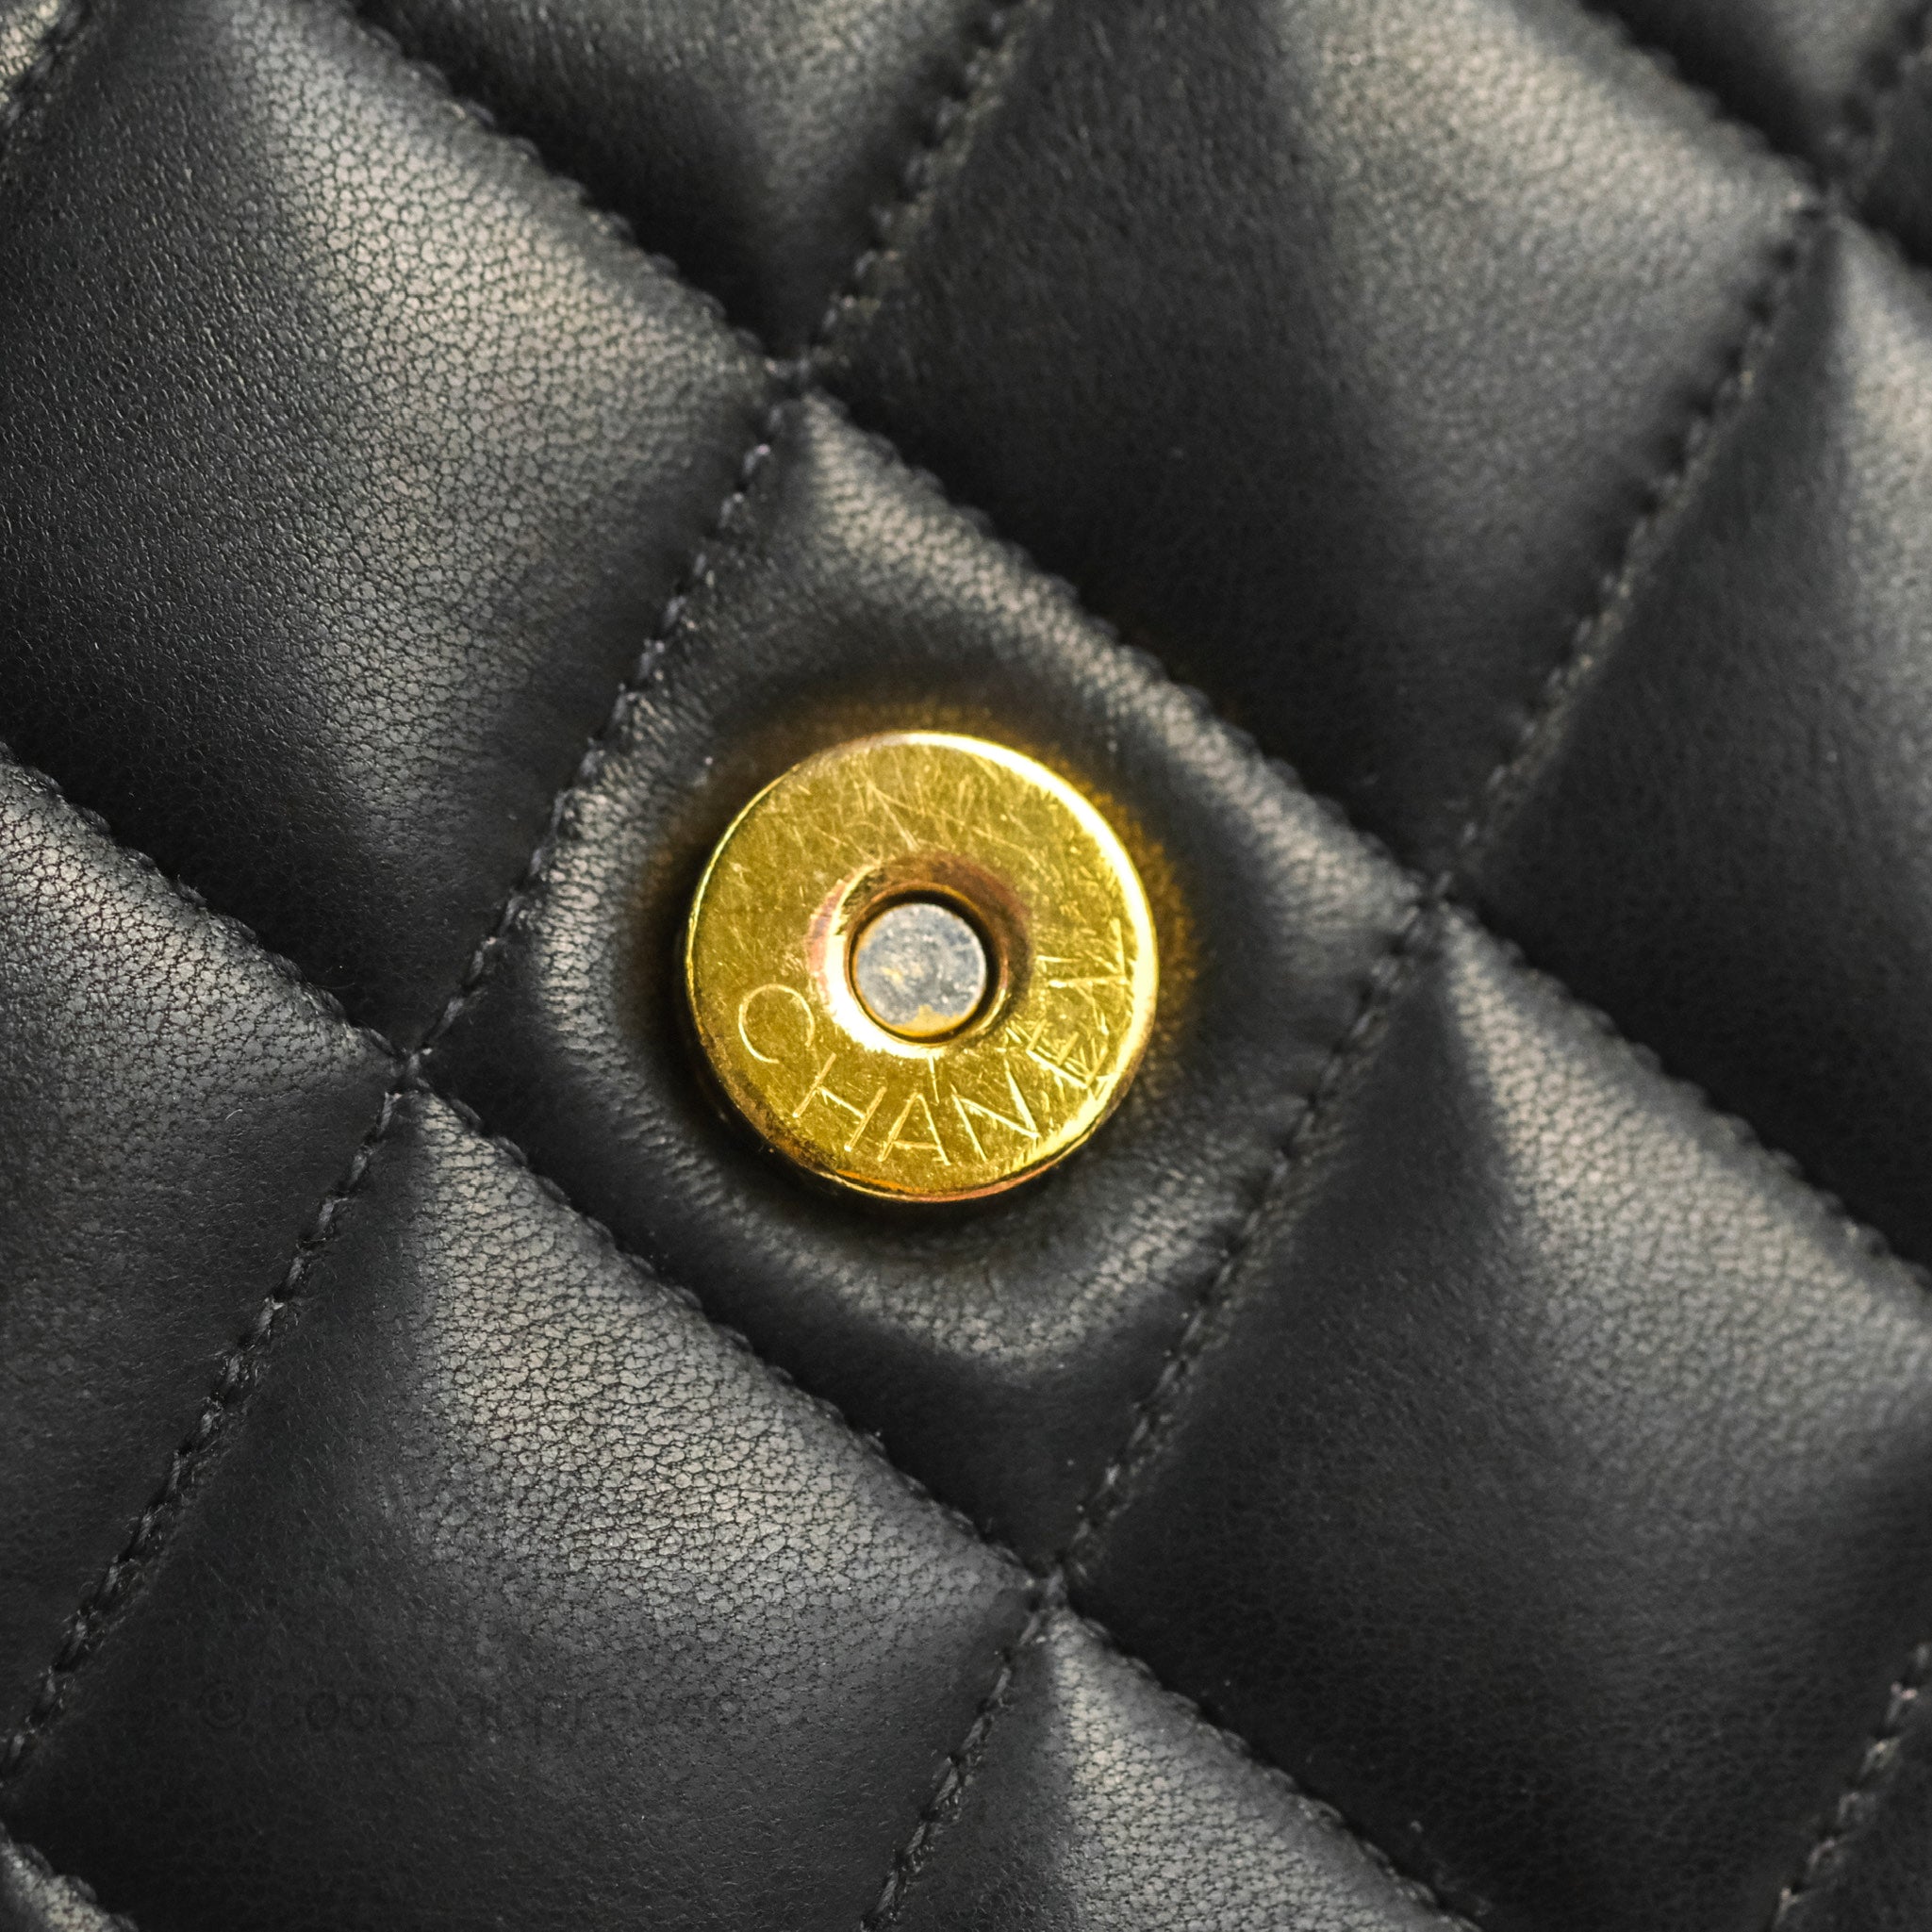 Chanel Vintage CC Shoulder Bag Black Calfskin – Coco Approved Studio